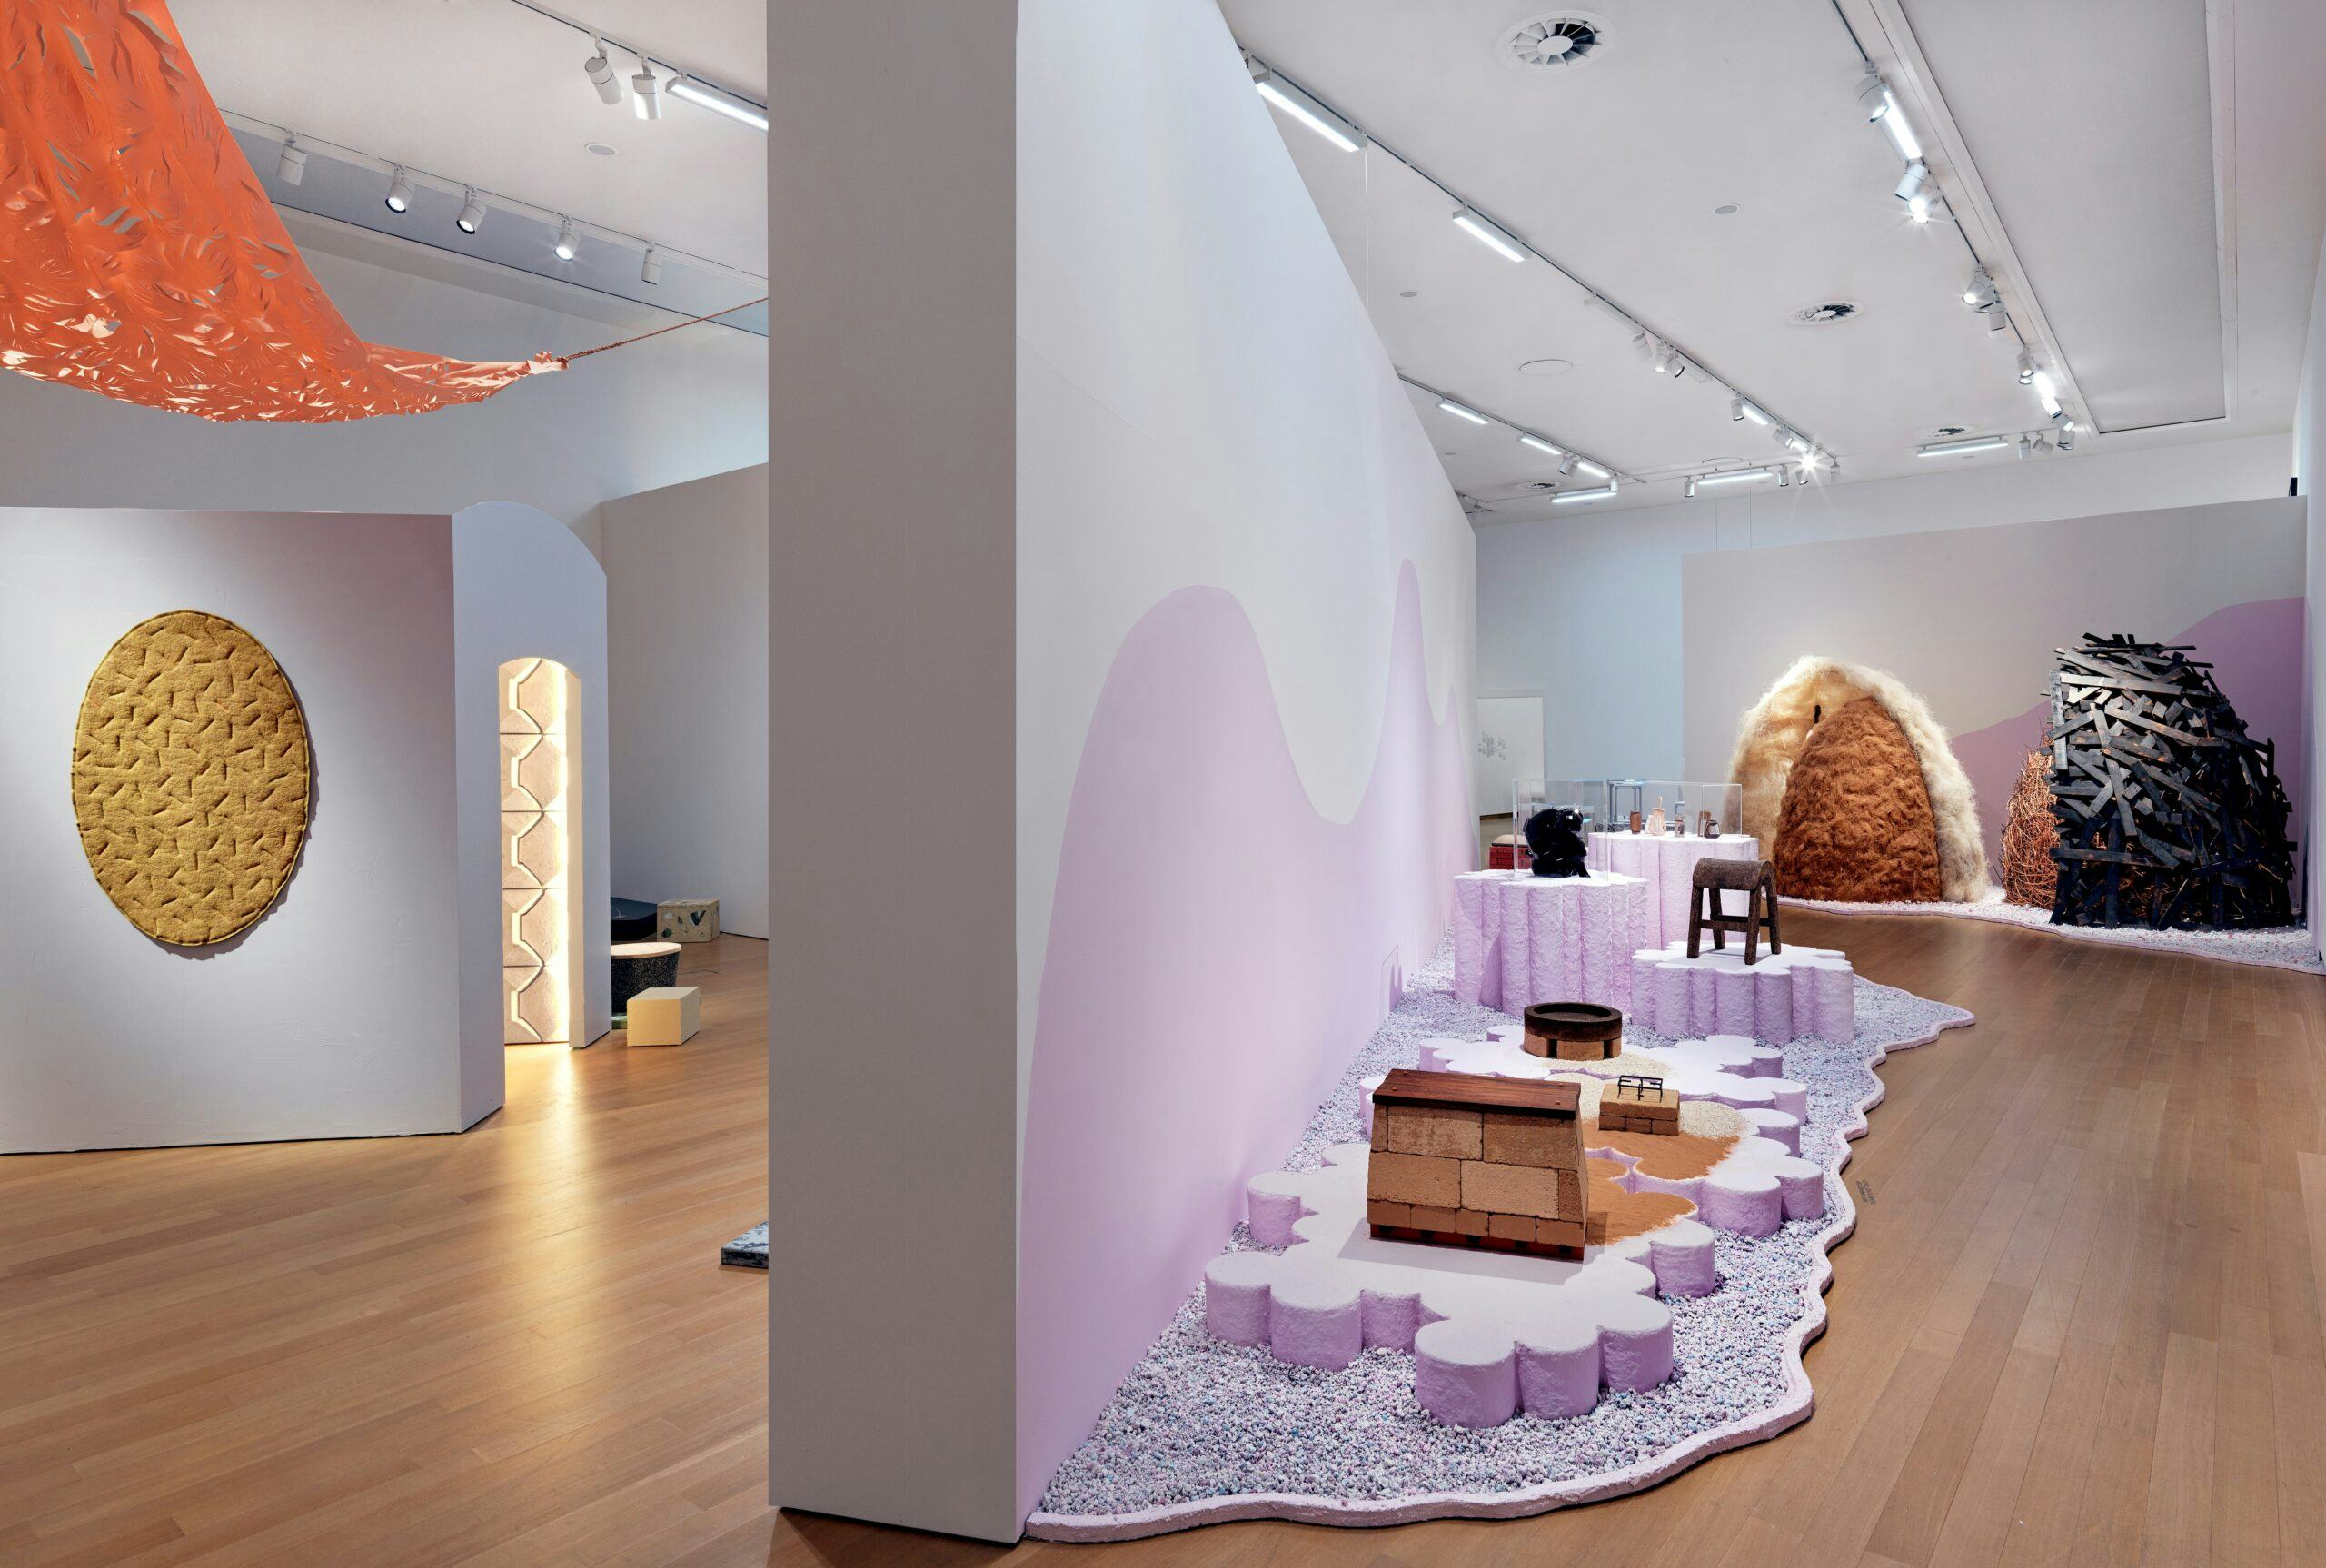 Het Stedelijk museum onderzoekt de potentie van duurzaam design